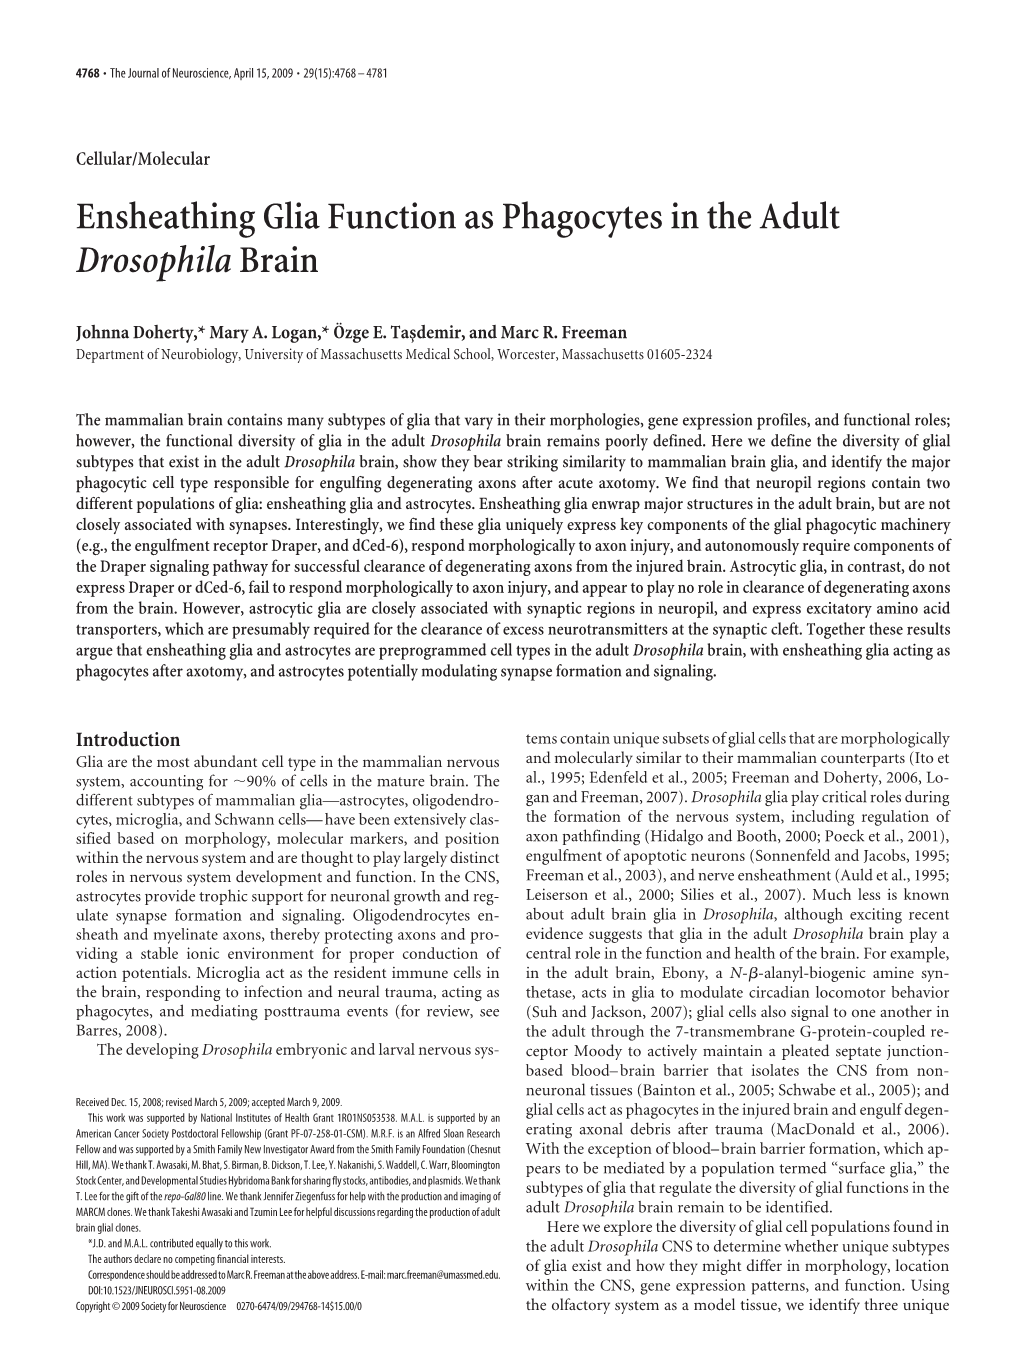 Ensheathing Glia Function As Phagocytes in the Adult Drosophila Brain